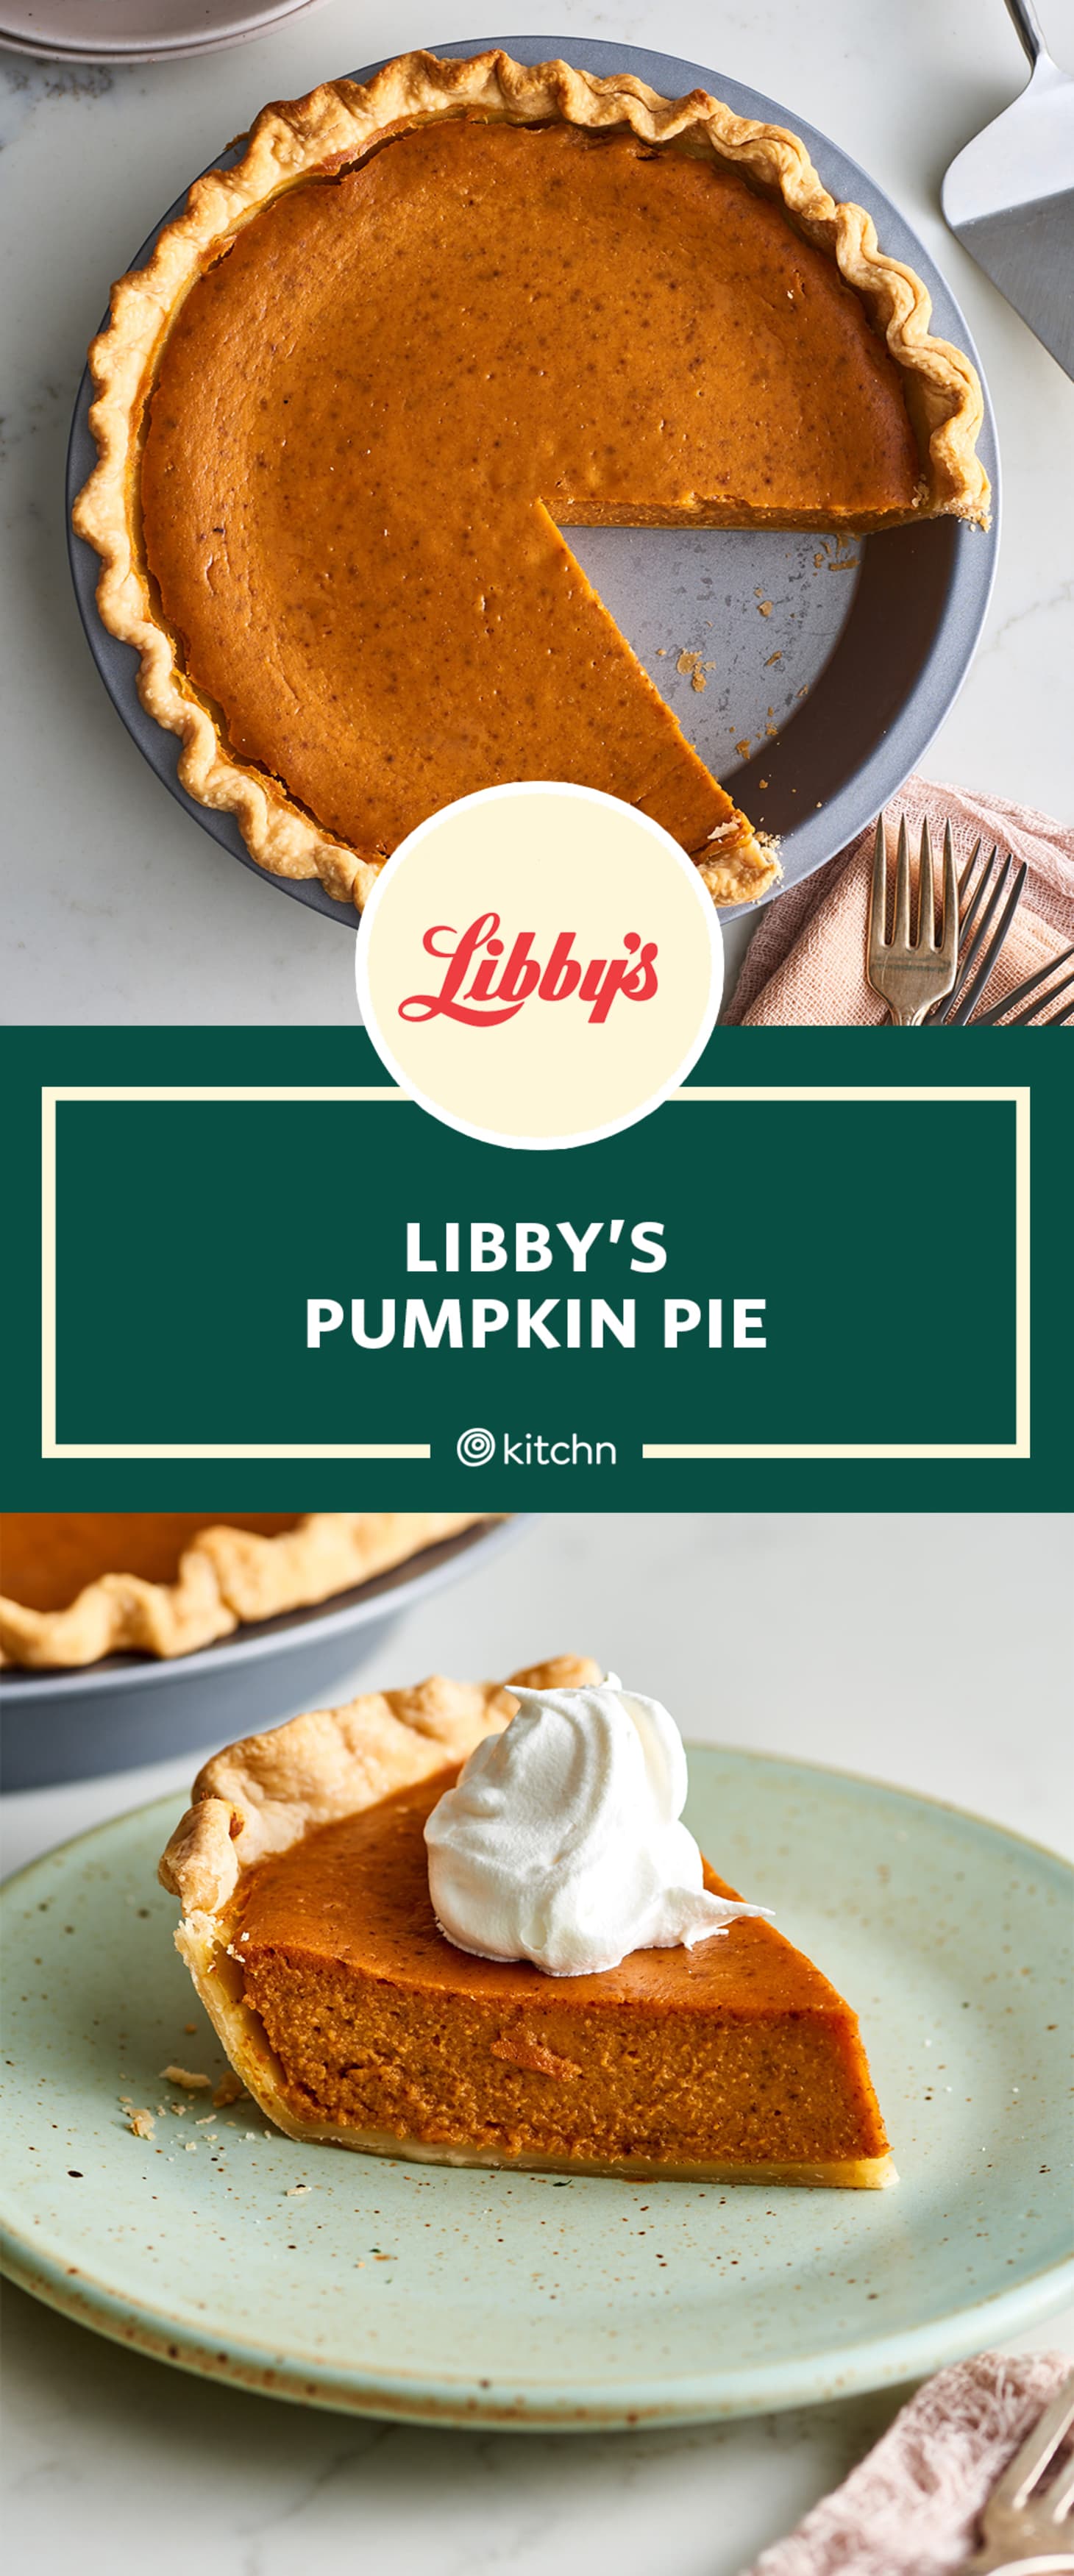 I Tried Libby's Famous Pumpkin Pie Recipe | Kitchn